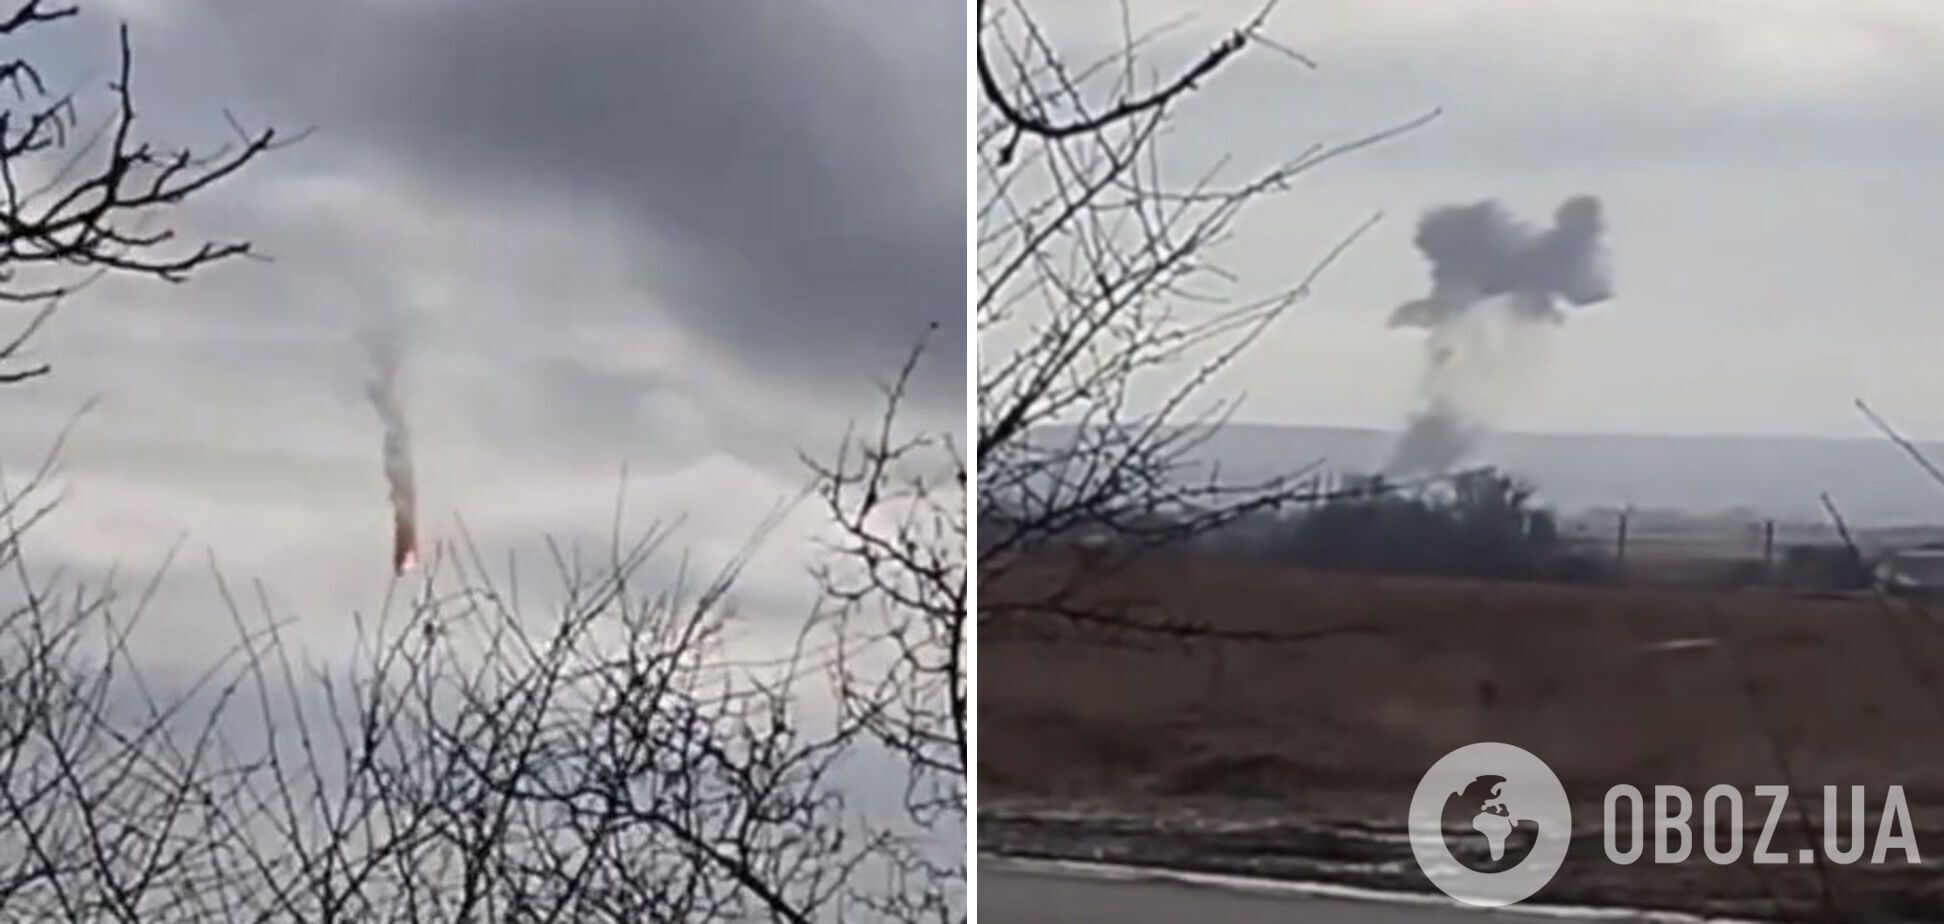 Пилот российского истребителя, который подбили ВСУ, направил самолет на украинское село. Видео